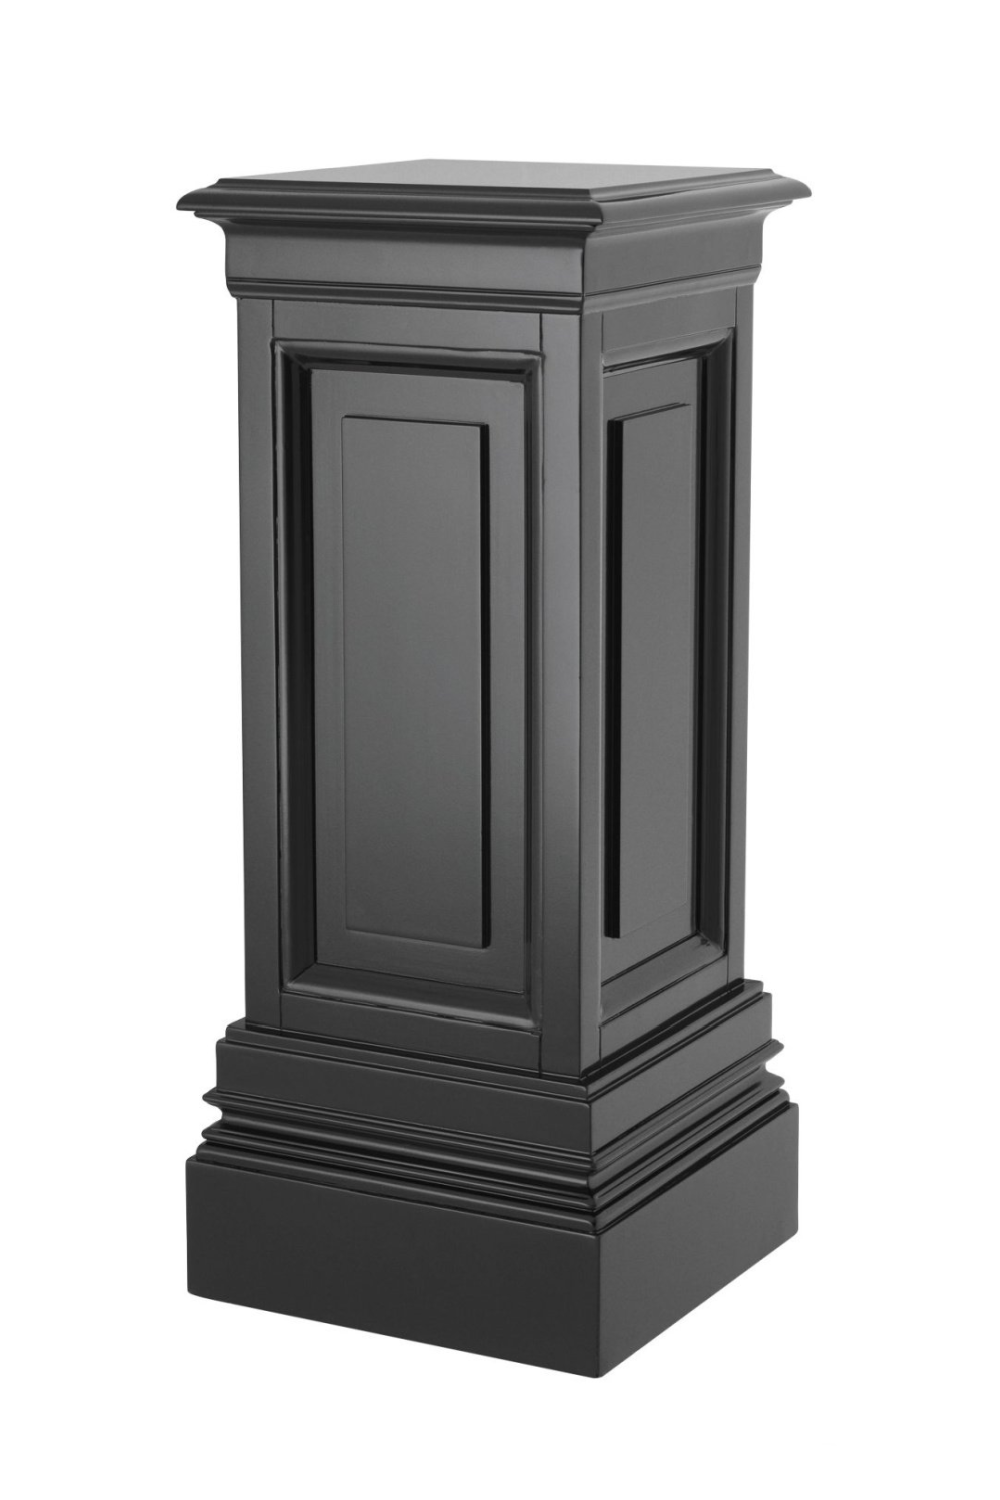 Pedestal de columna 114002 Profhome Columna Elemento decorativo